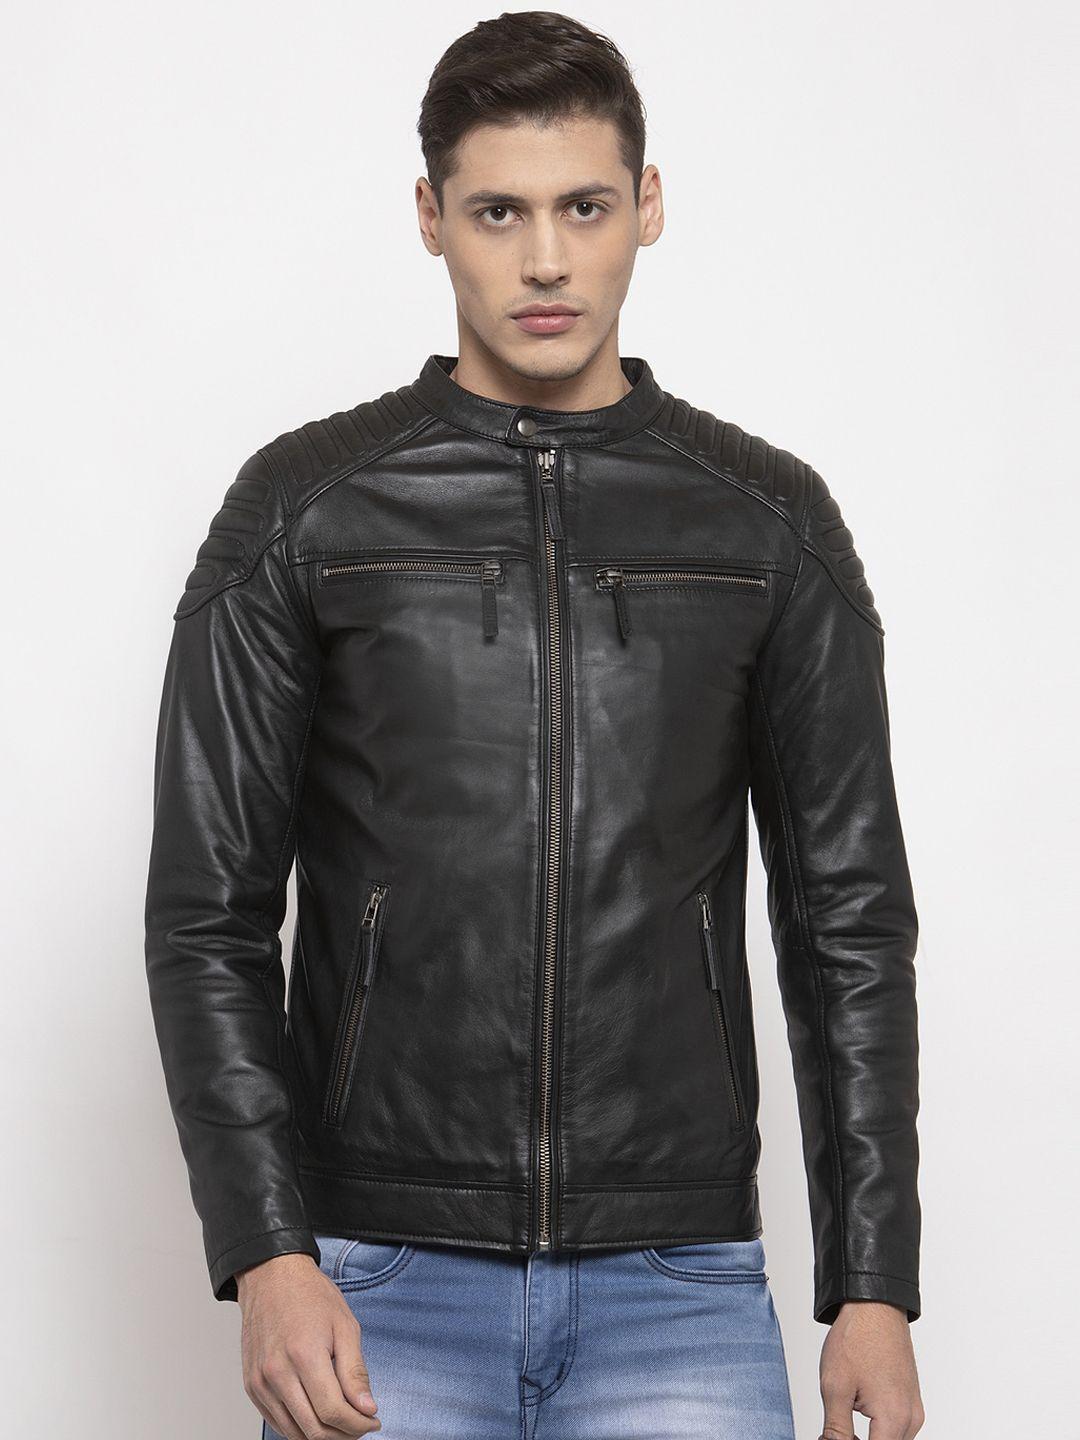 welbawt men black leather jacket